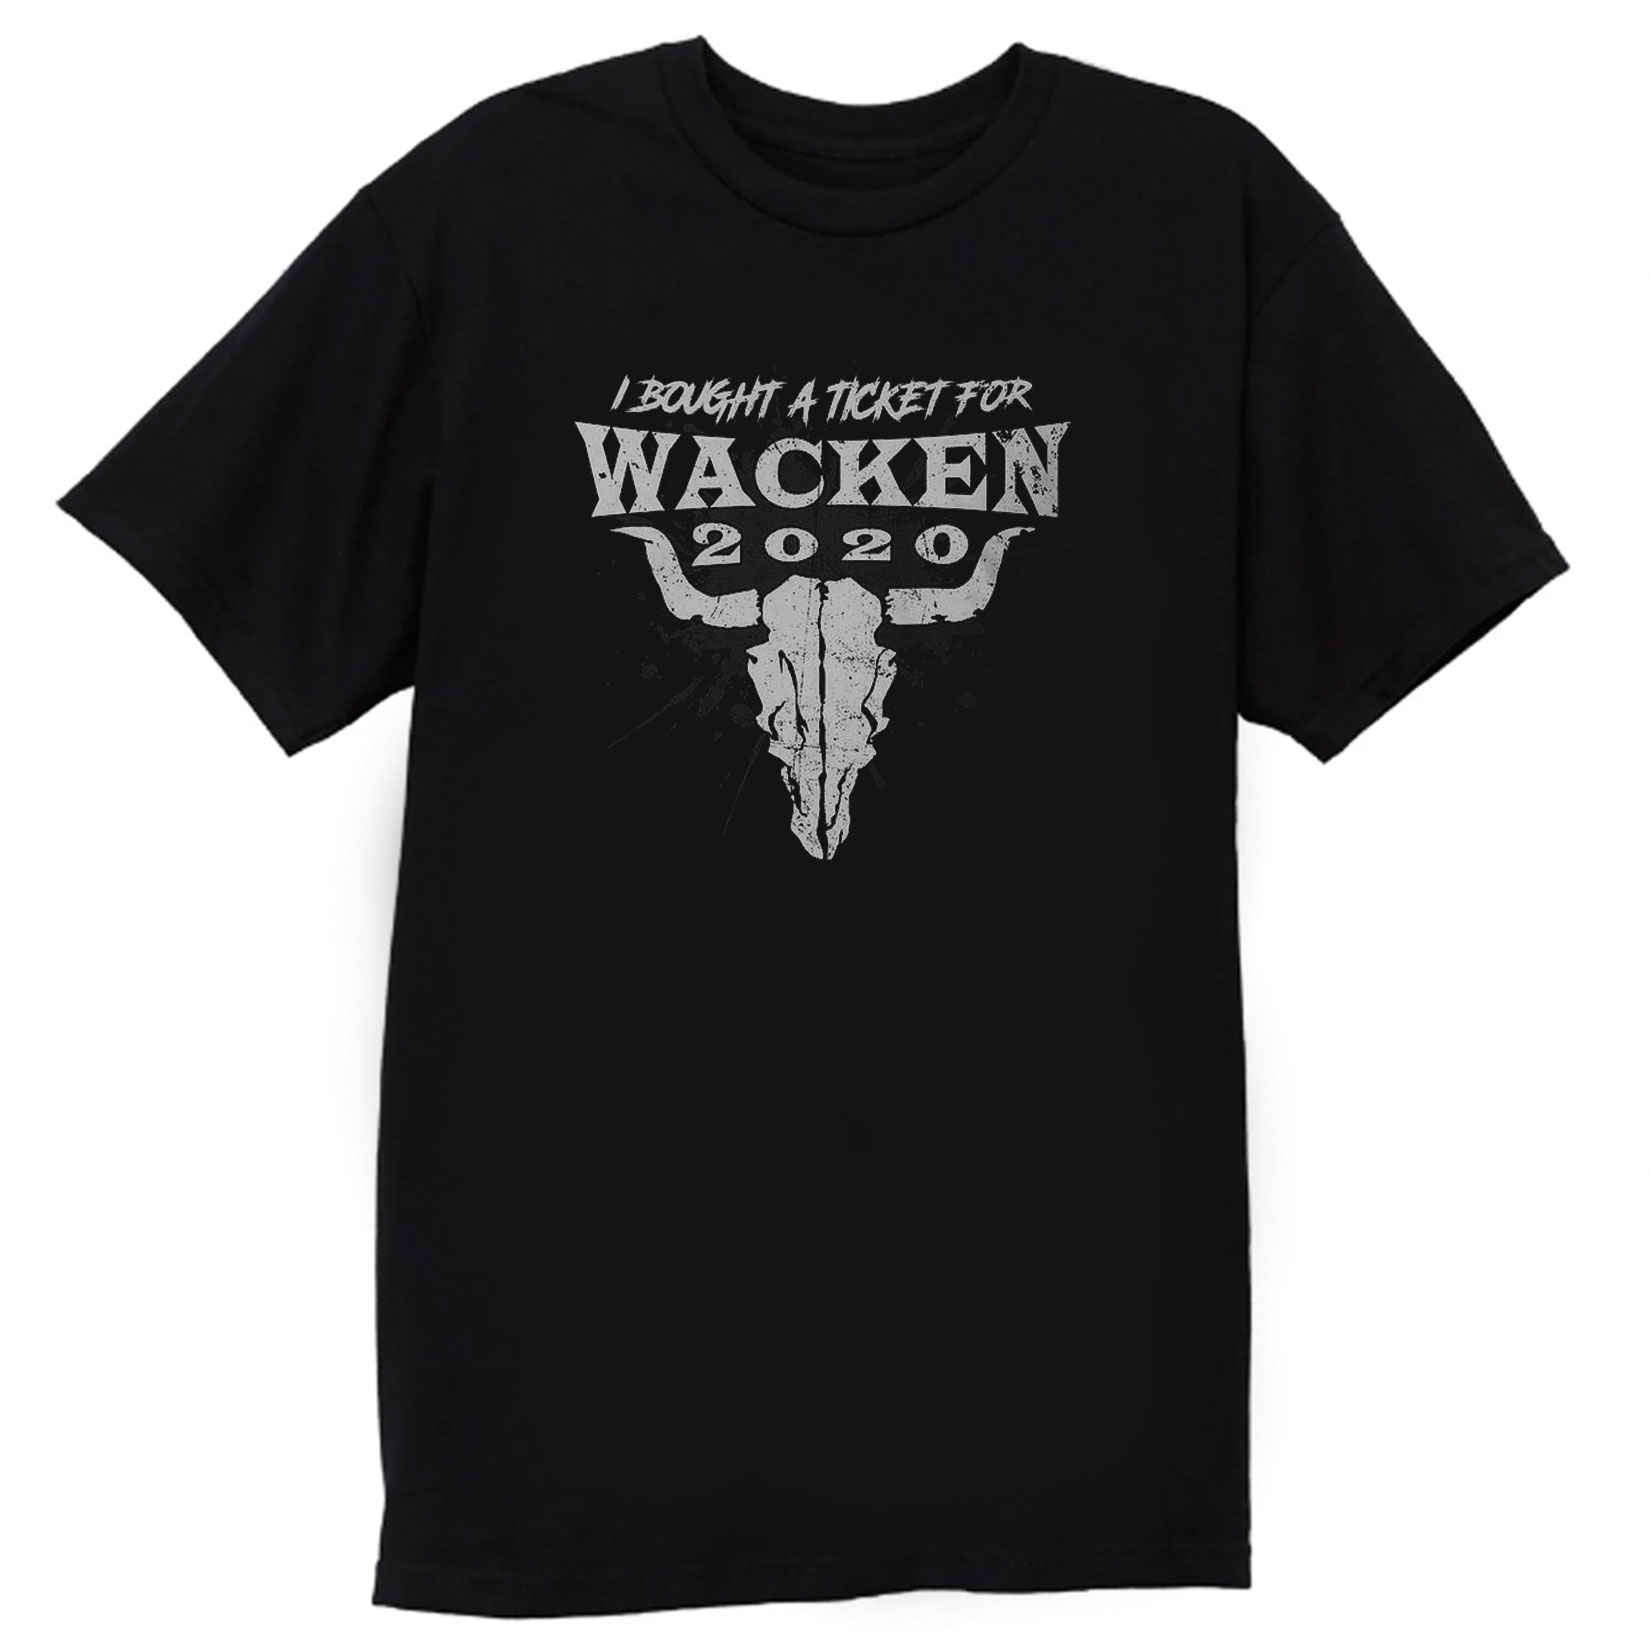 Wacken Music Festival 2020 T Shirt Größe NEU 2020 Wacken SIZE S-5XL 